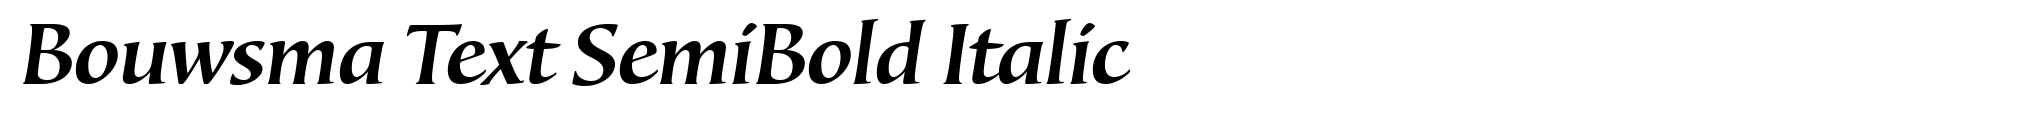 Bouwsma Text SemiBold Italic image